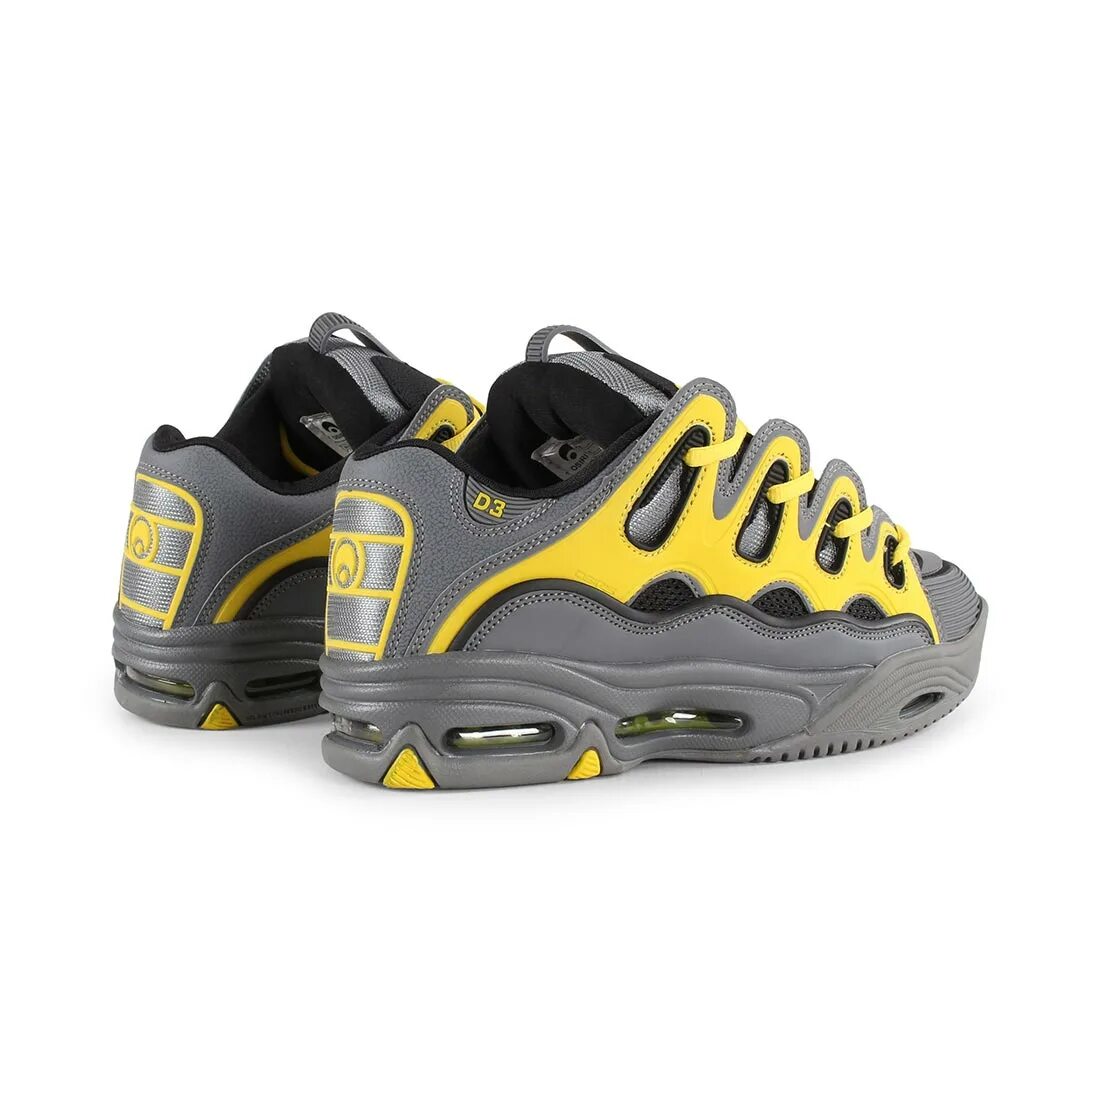 D3 2001. Кроссовки Osiris d3 2001. Osiris d3 2001 Skate Shoes – Charcoal/Yellow. Osiris Mens d3 2001 Skate Shoe. Osiris d3 2001 Black.